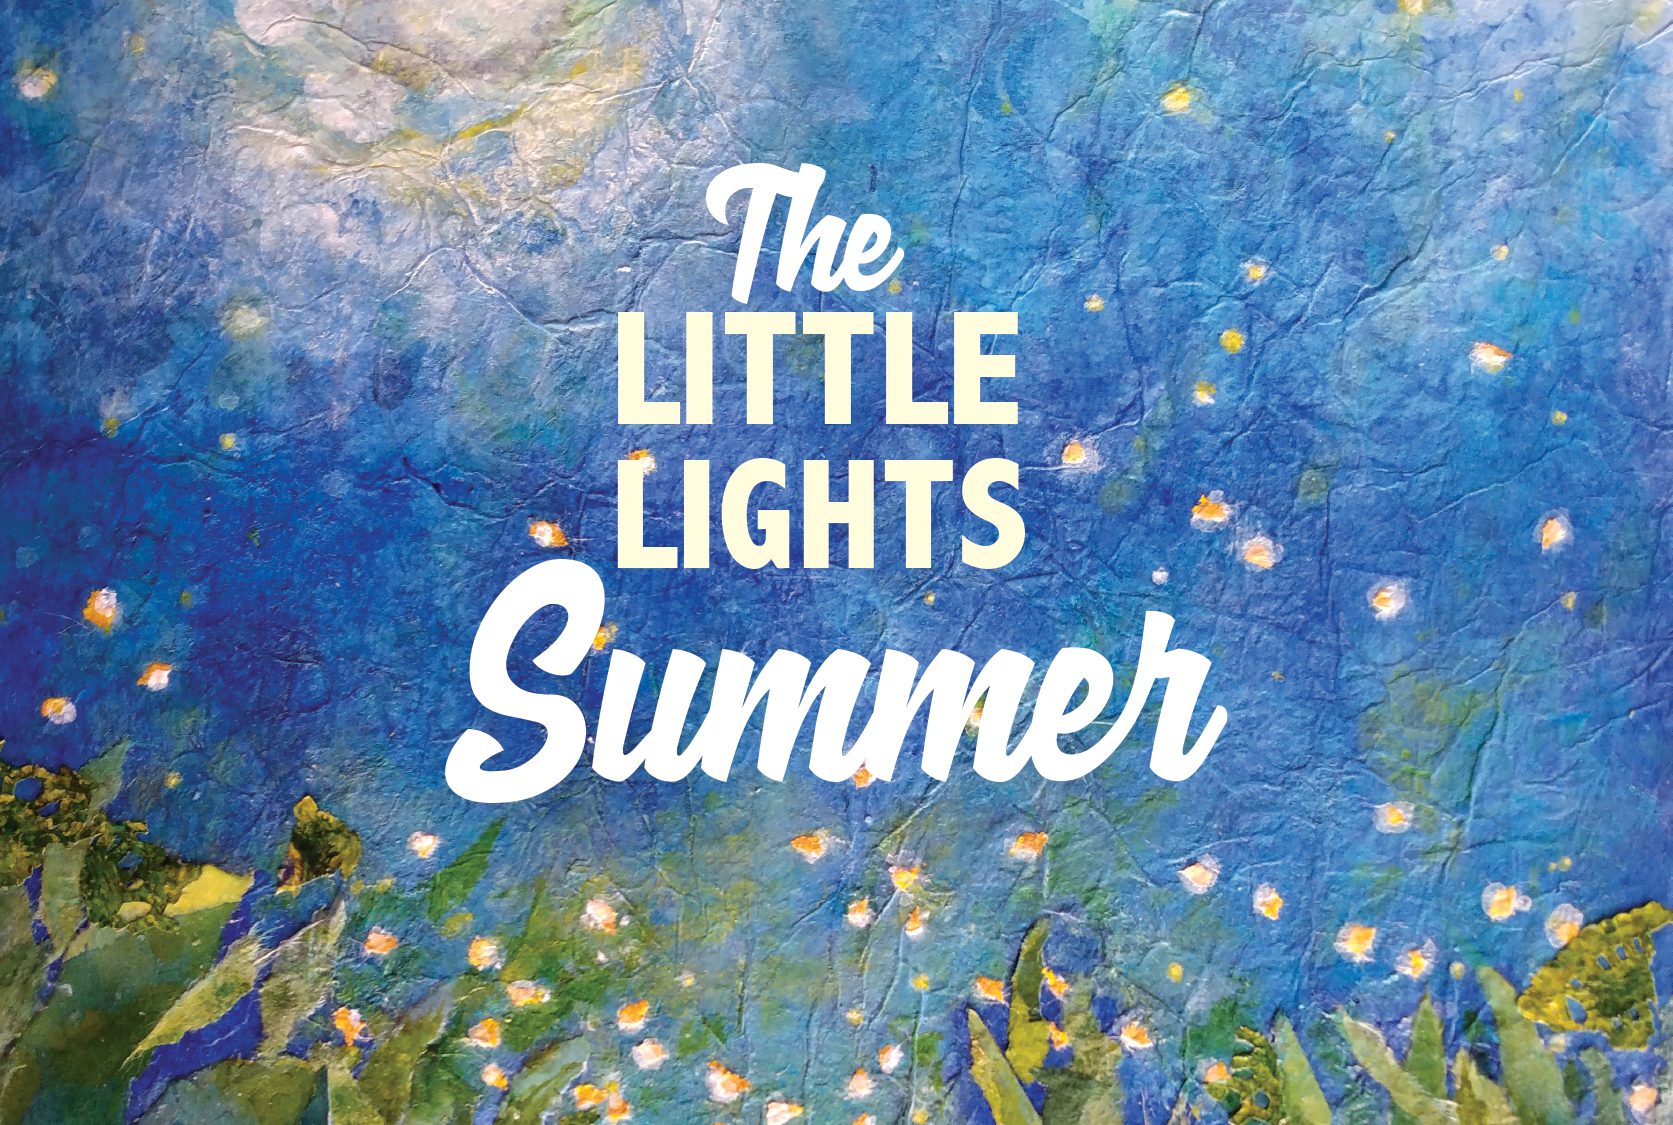 Fireflies: The Little Lights of Summer